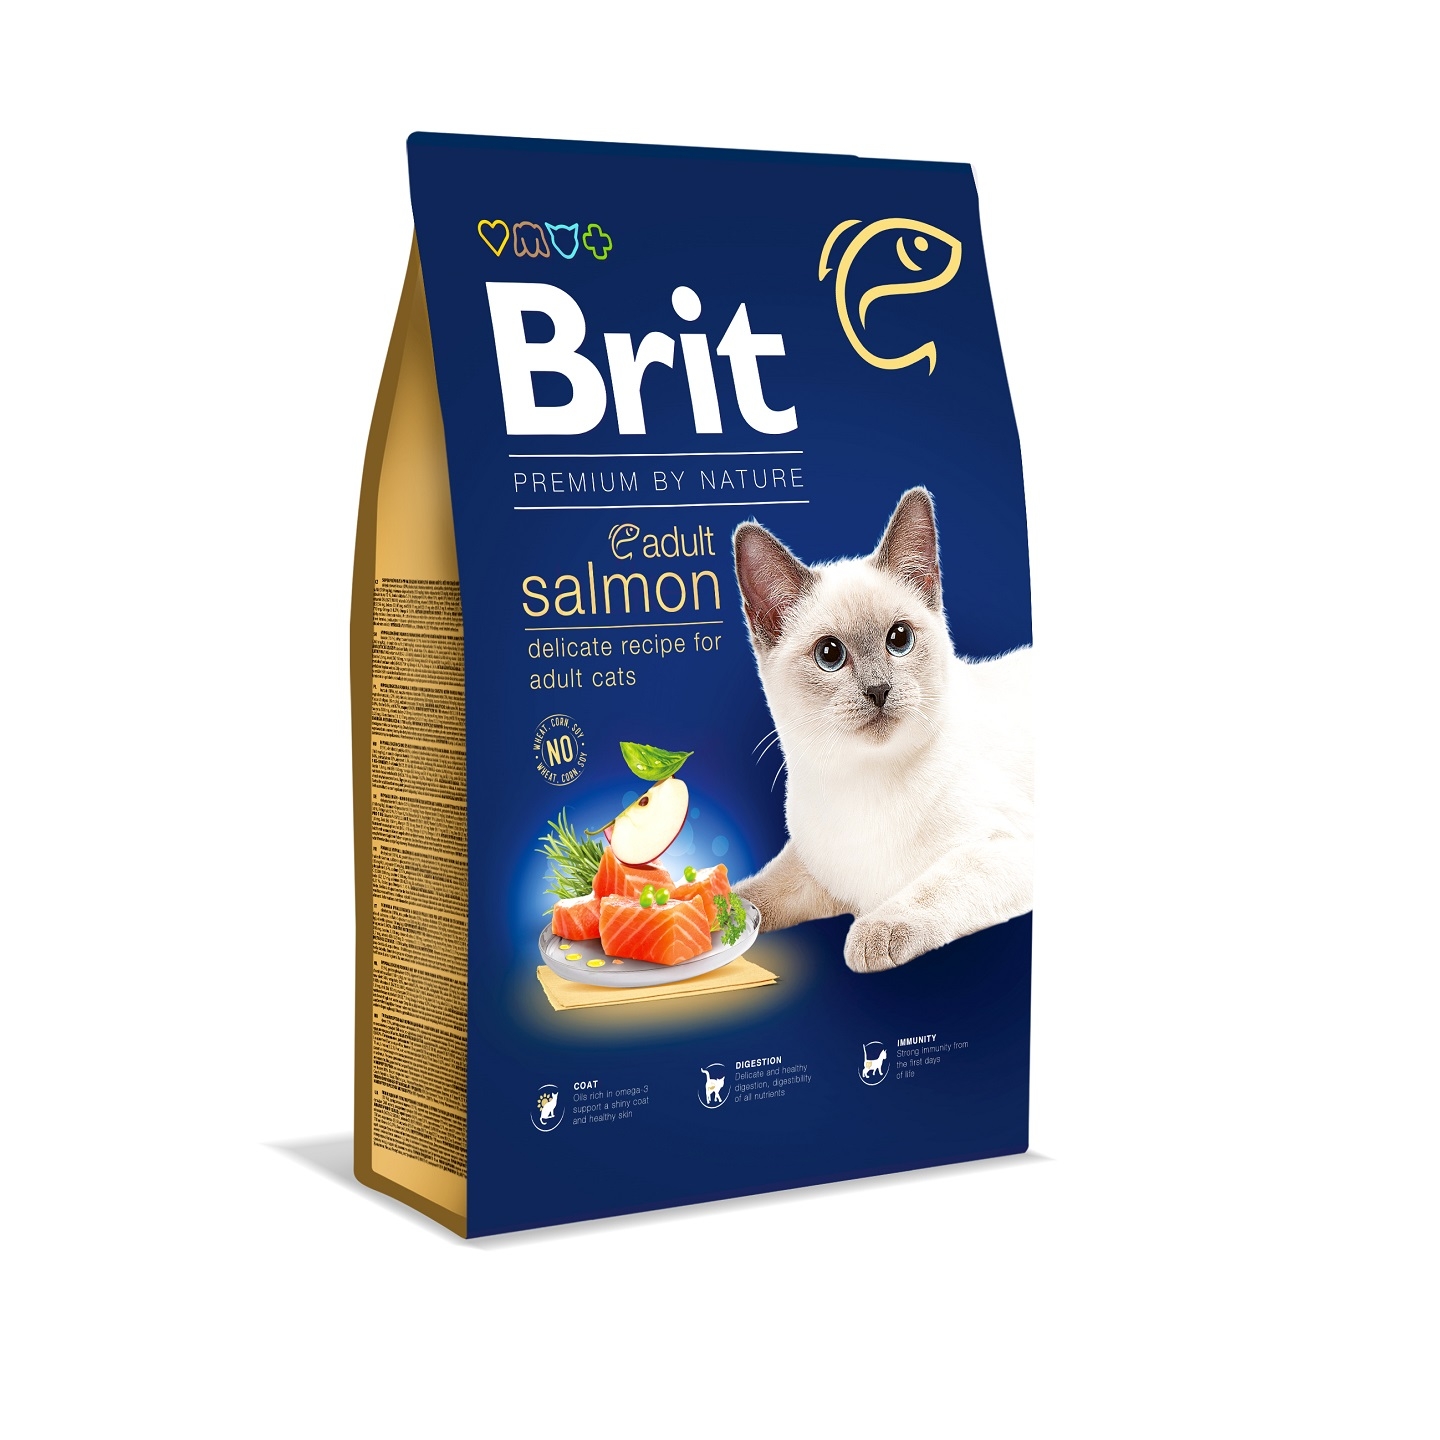 Brit Premium by Nature Cat Adult Salmon, 8 kg petmart